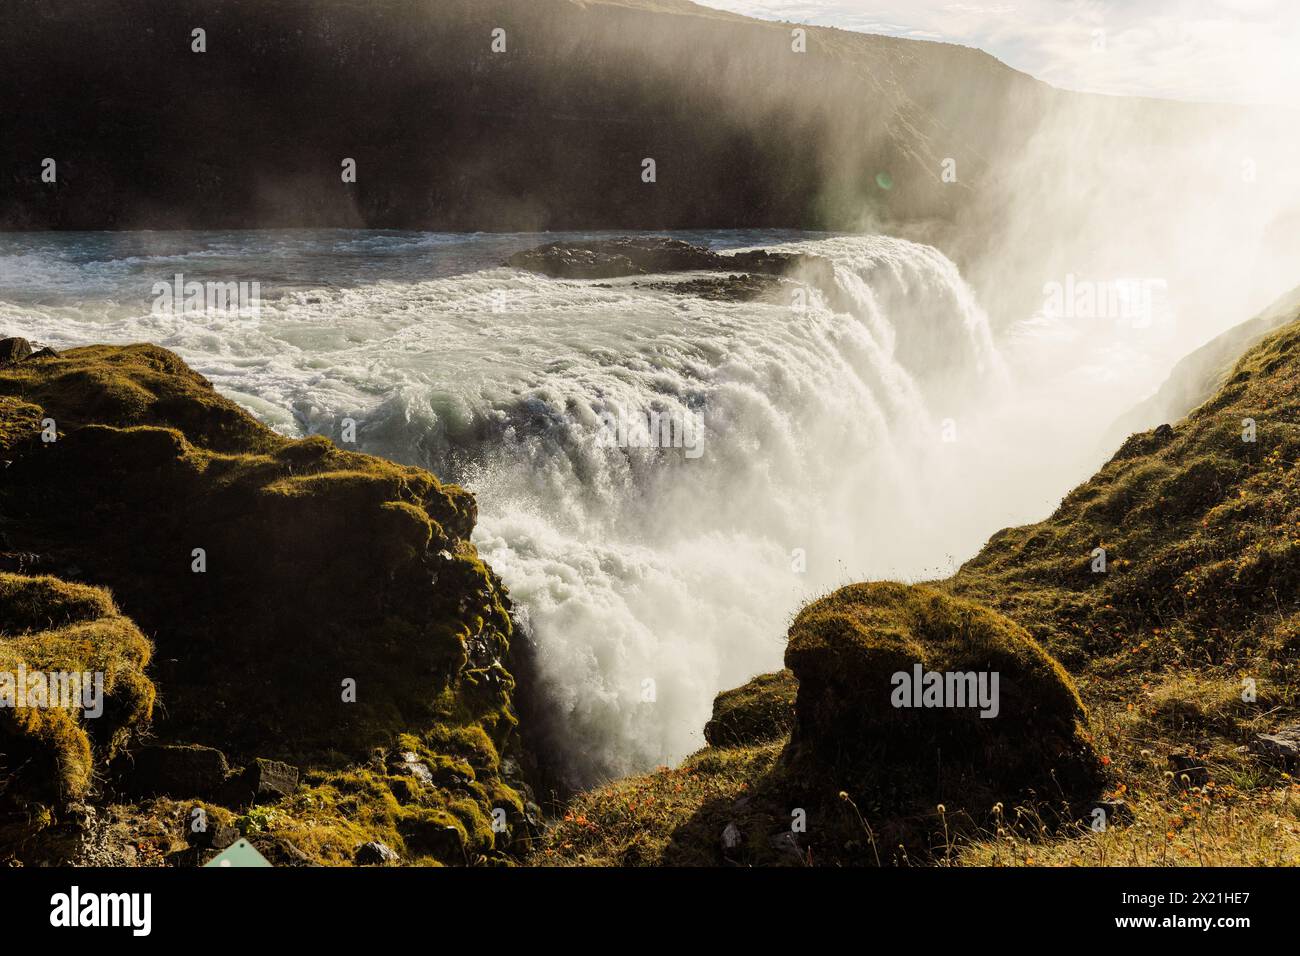 Chute d'eau Gullfoss baignée de soleil en Islande au milieu d'une végétation luxuriante Banque D'Images